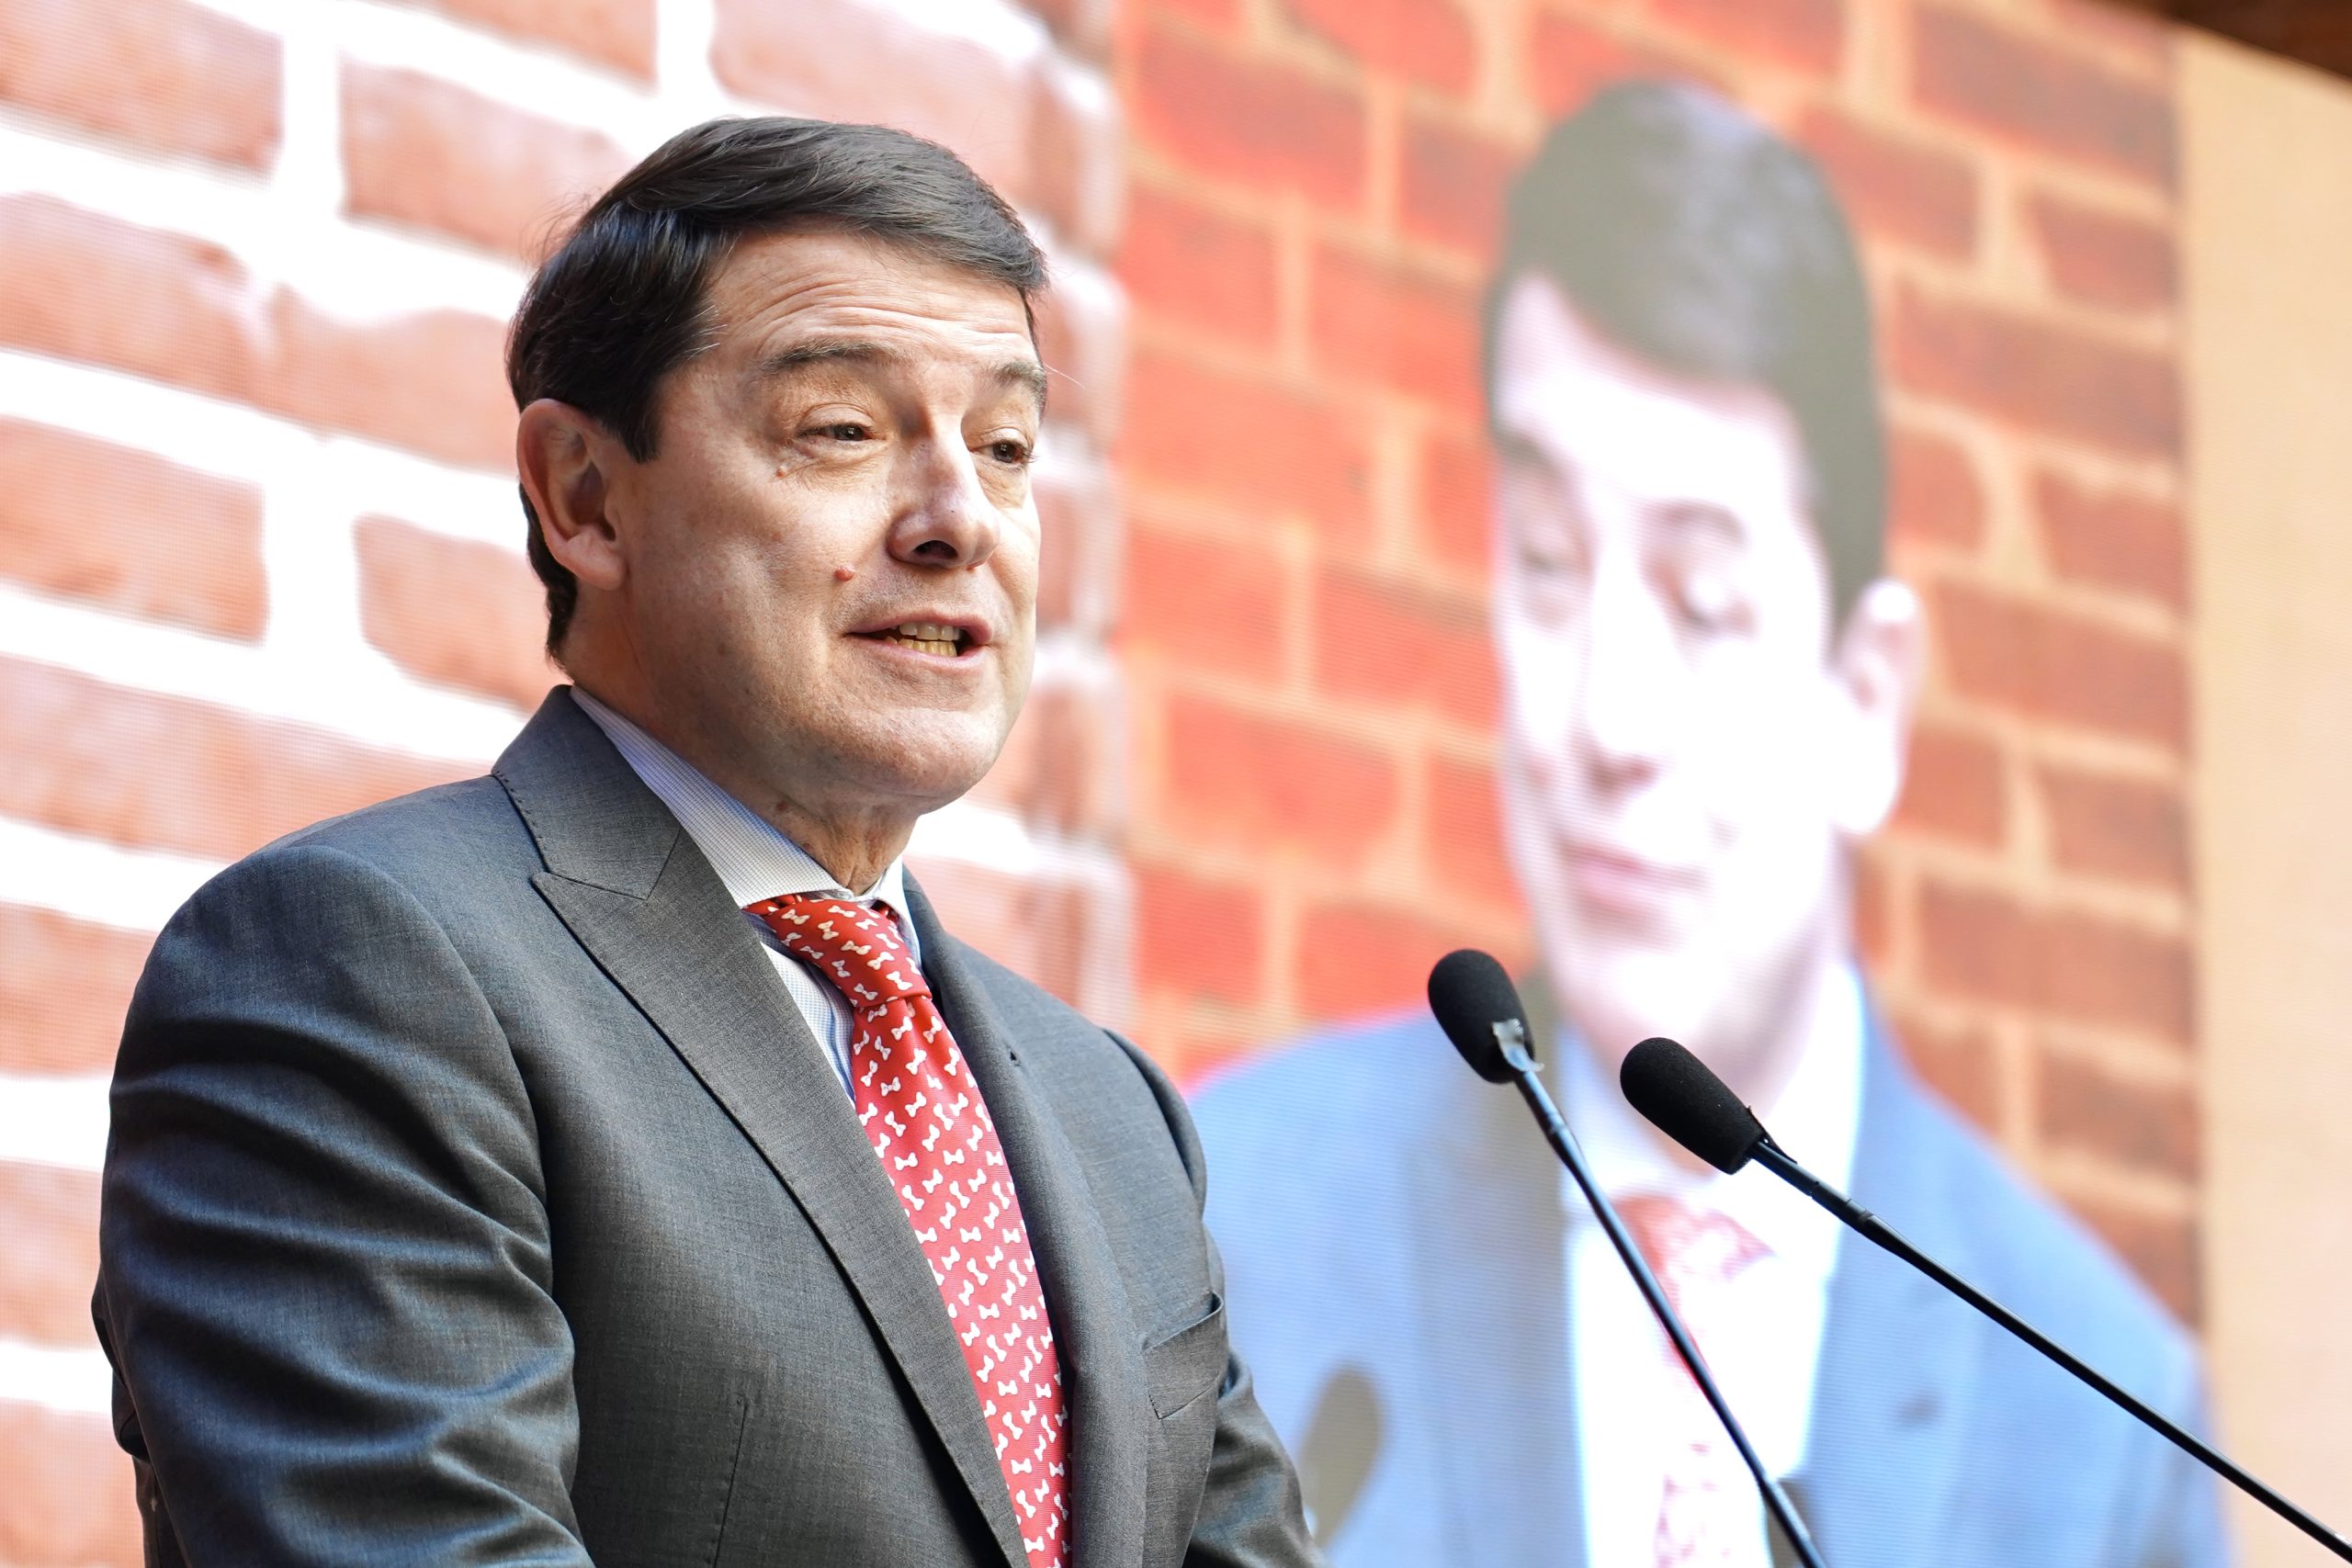 El presidente de la Junta de Castilla y León, Alfonso Fernández Mañueco, participa en la Gala de entrega del XVIII premio Diario de León al Desarrollo Social y los Valores Humanos